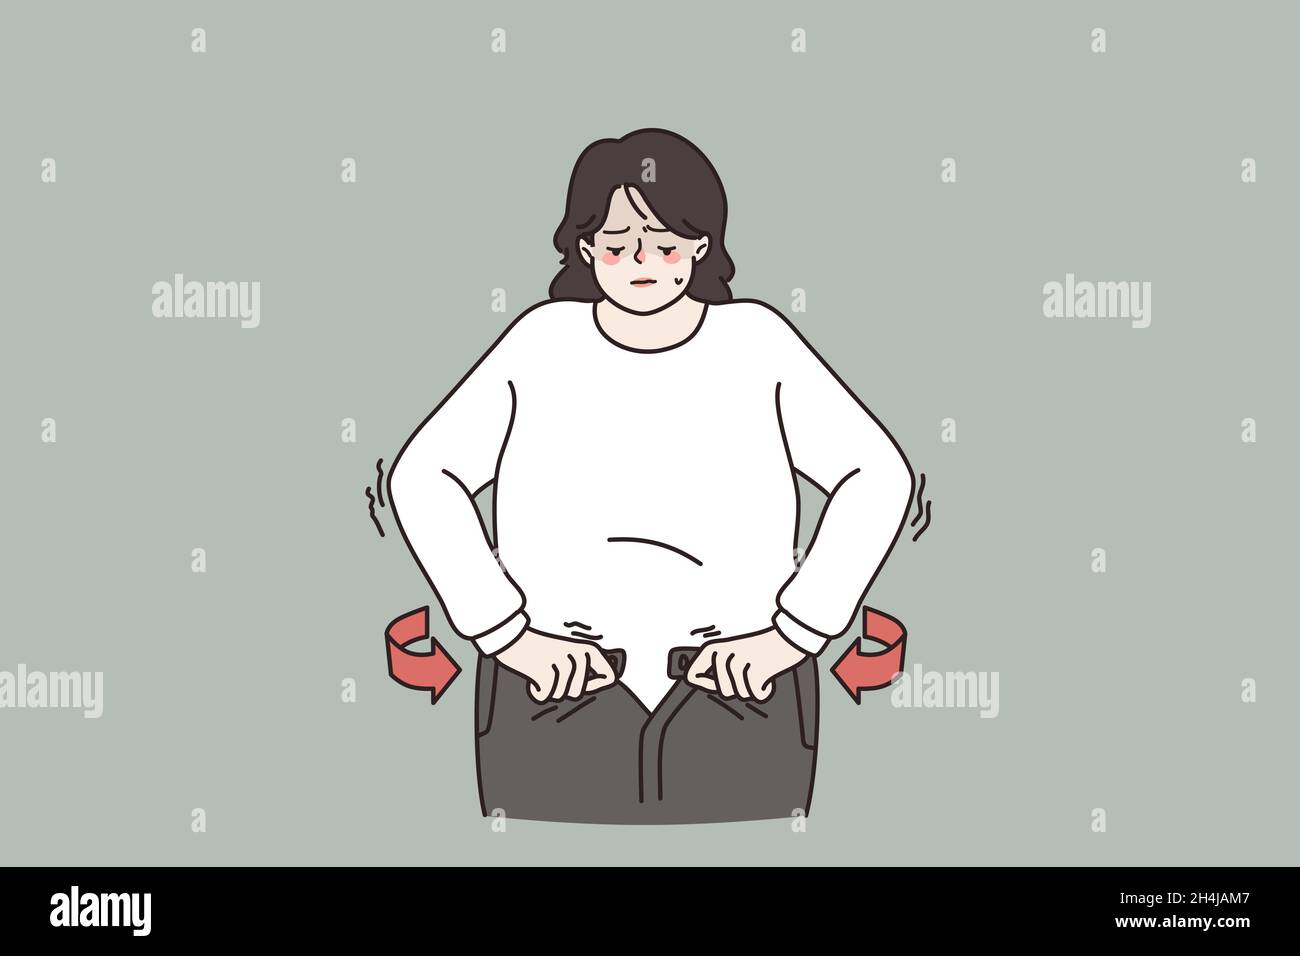 Unglücklich übergewichtige Frau nicht in der Lage, Jeans zu befestigen, müssen Gewicht verlieren, um den Körper fit zu halten. Fette Frauen leiden unter übermäßigem Körpergewicht. Ernährung, gesunde Lebensweise Konzept. Flache Vektorgrafik. Stock Vektor